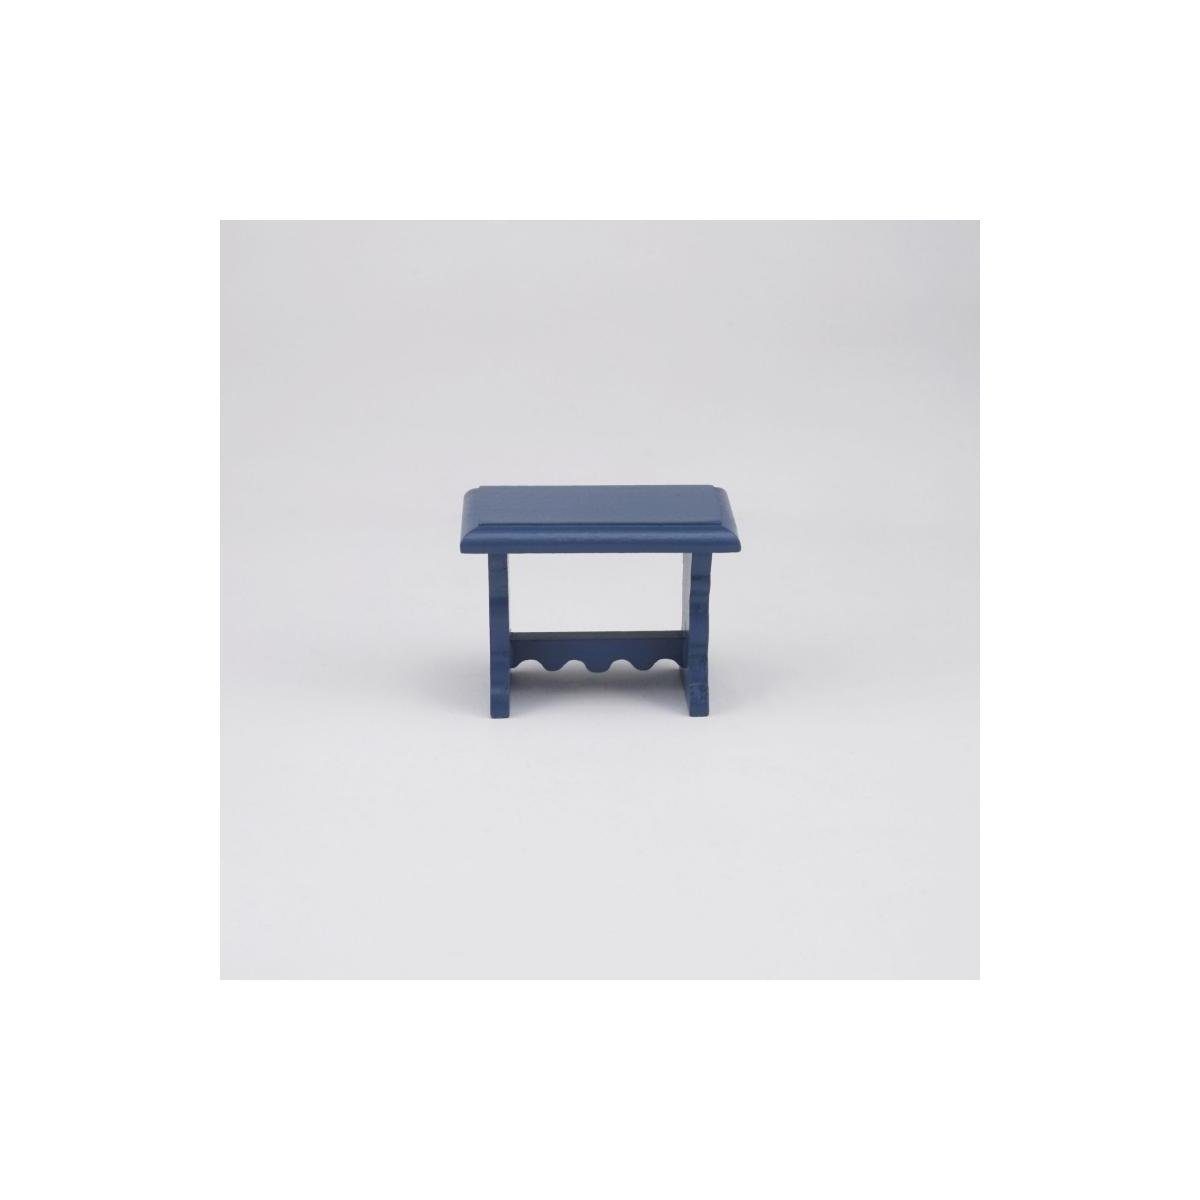 Miniatur, - Beistelltisch, kleiner Reutter blauer Dekofigur Porzellan 001.505/9 leer